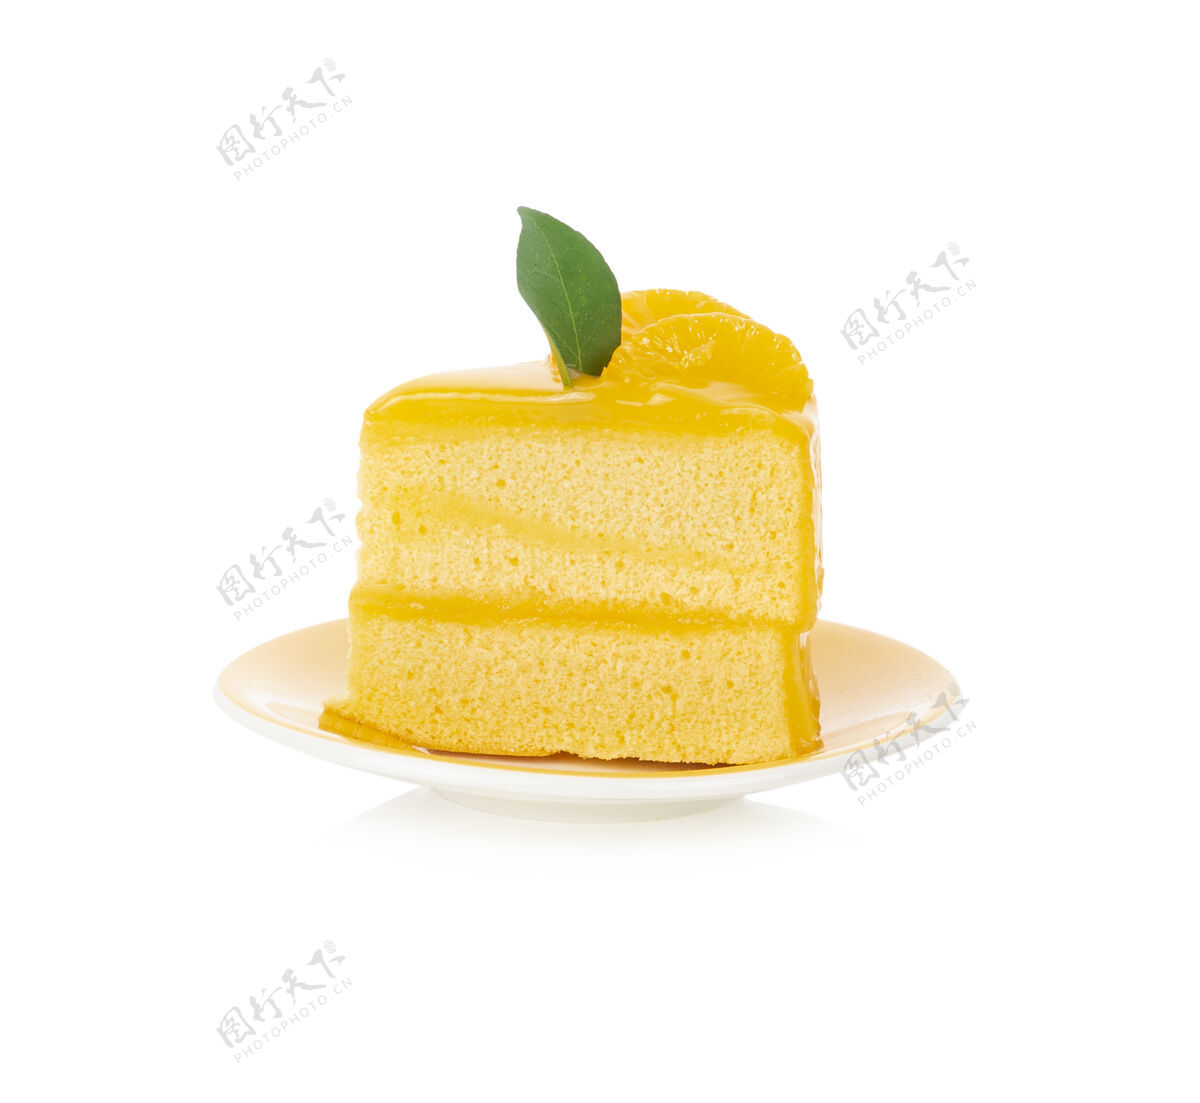 面包房橘子蛋糕被隔离在白色的表面上美味美食蛋糕